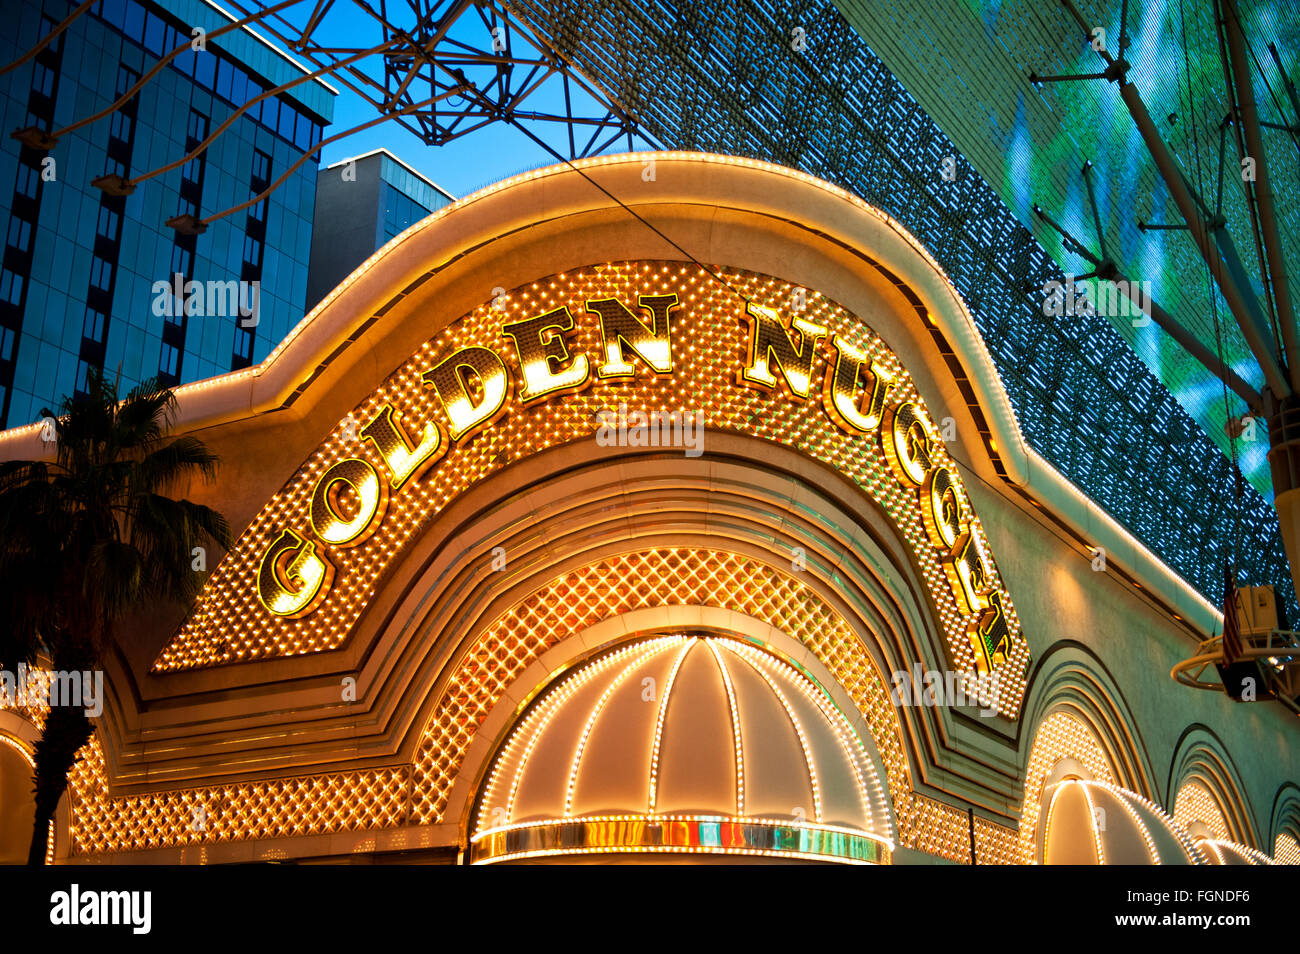 Le Golden Nugget Casino, Fremont street, Las Vegas "Fremont Street Experience"., Banque D'Images